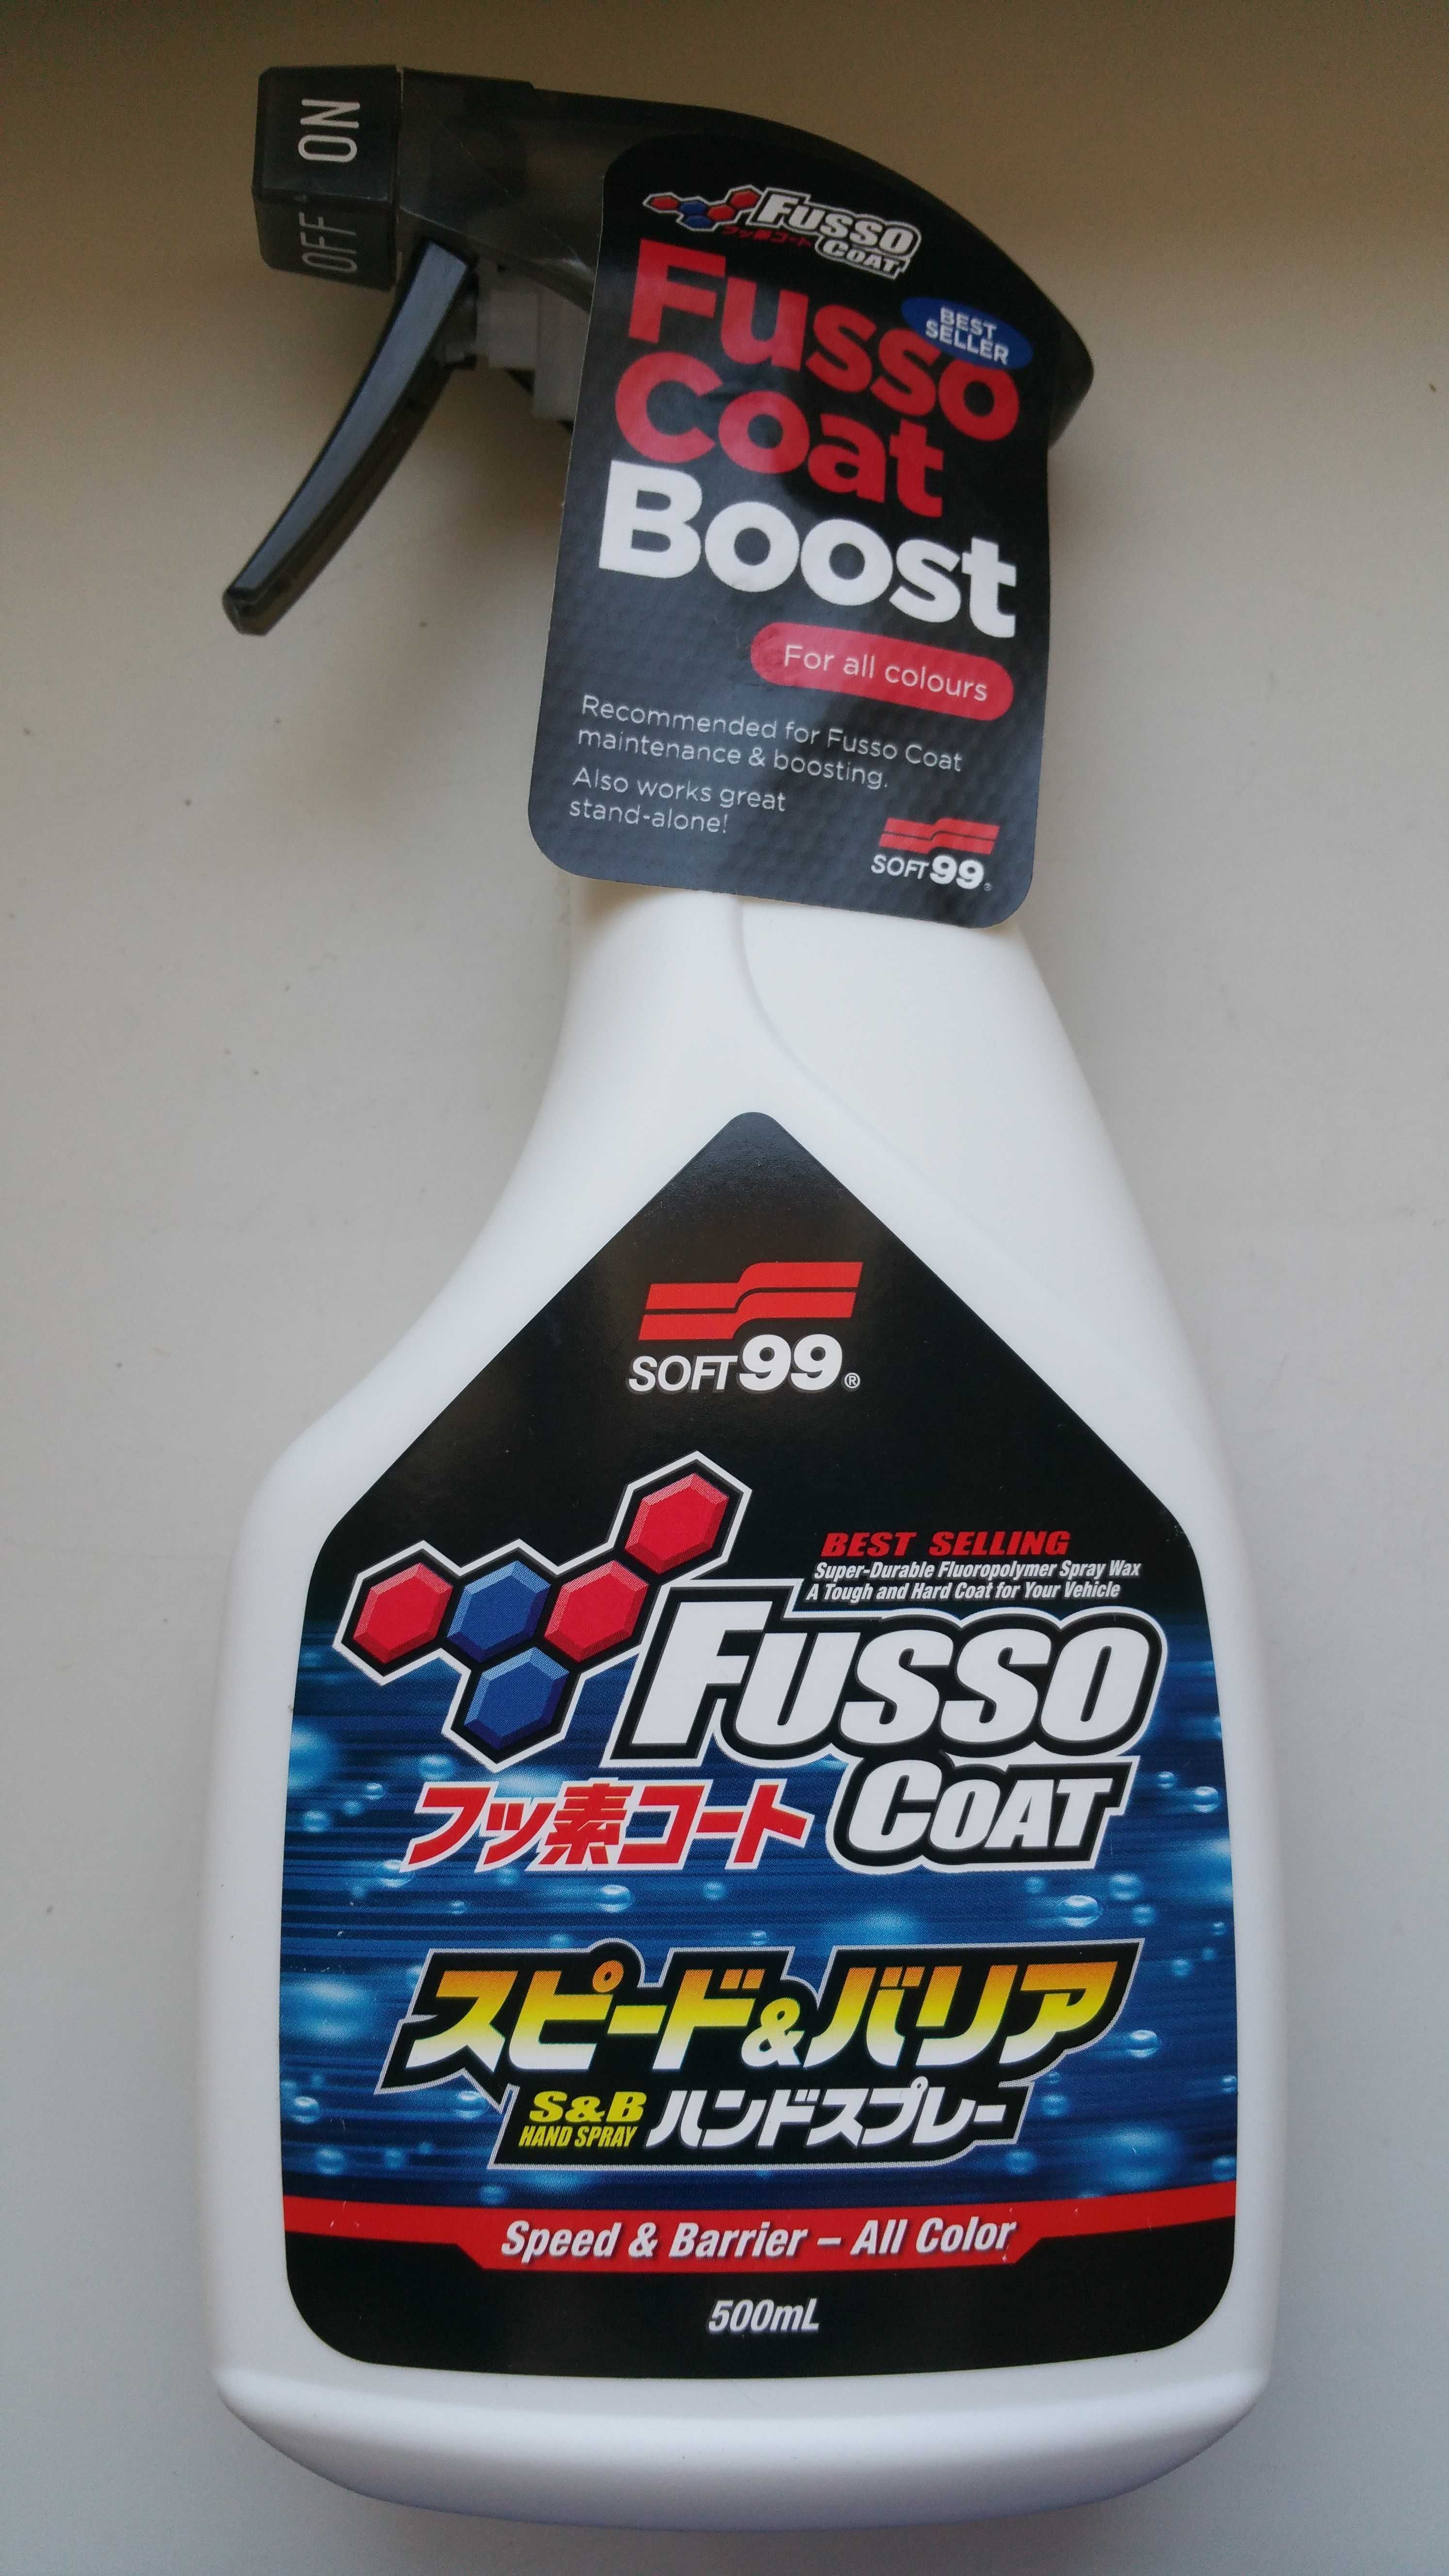 Soft99 wosk w płynie samochodowy Fusso Coat